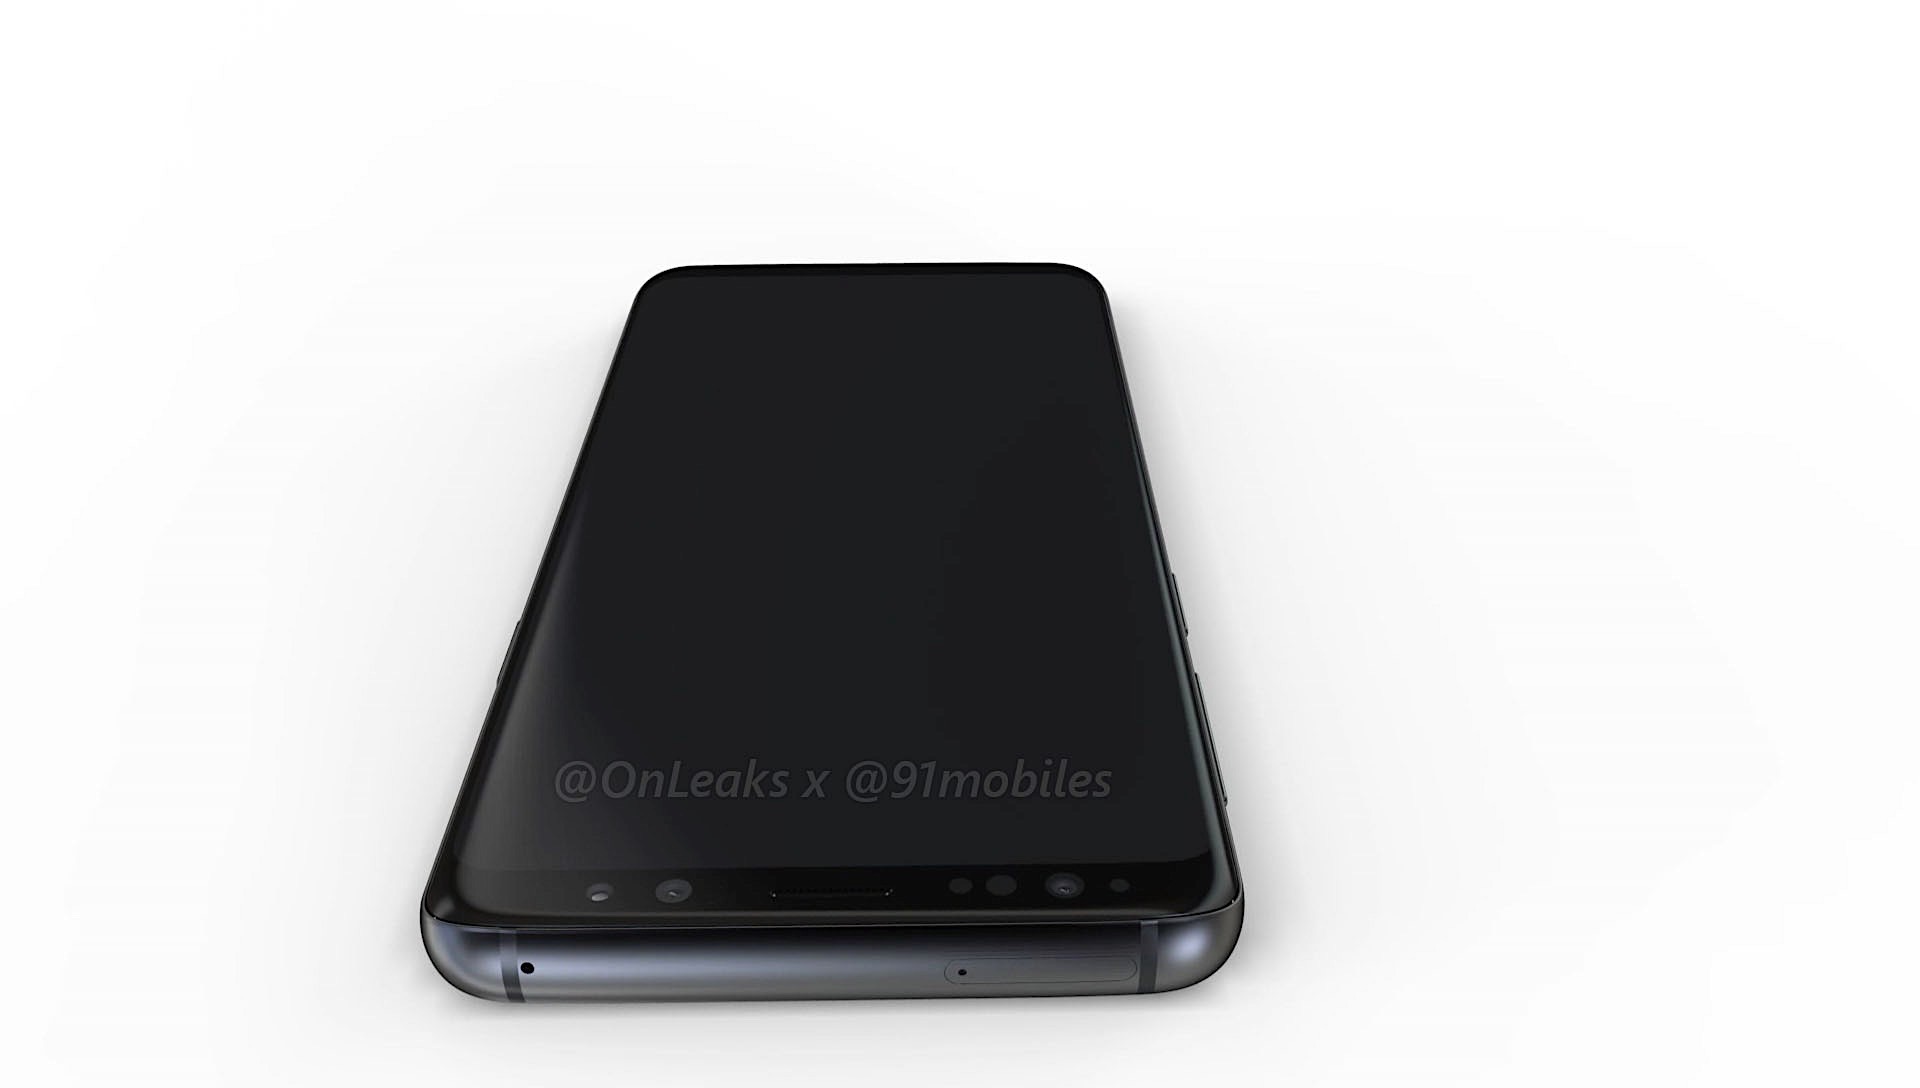 OnLeaks giới thiệu video
render Galaxy S9 và Galaxy S9+ cực kỳ sắc nét và rất chính
xác